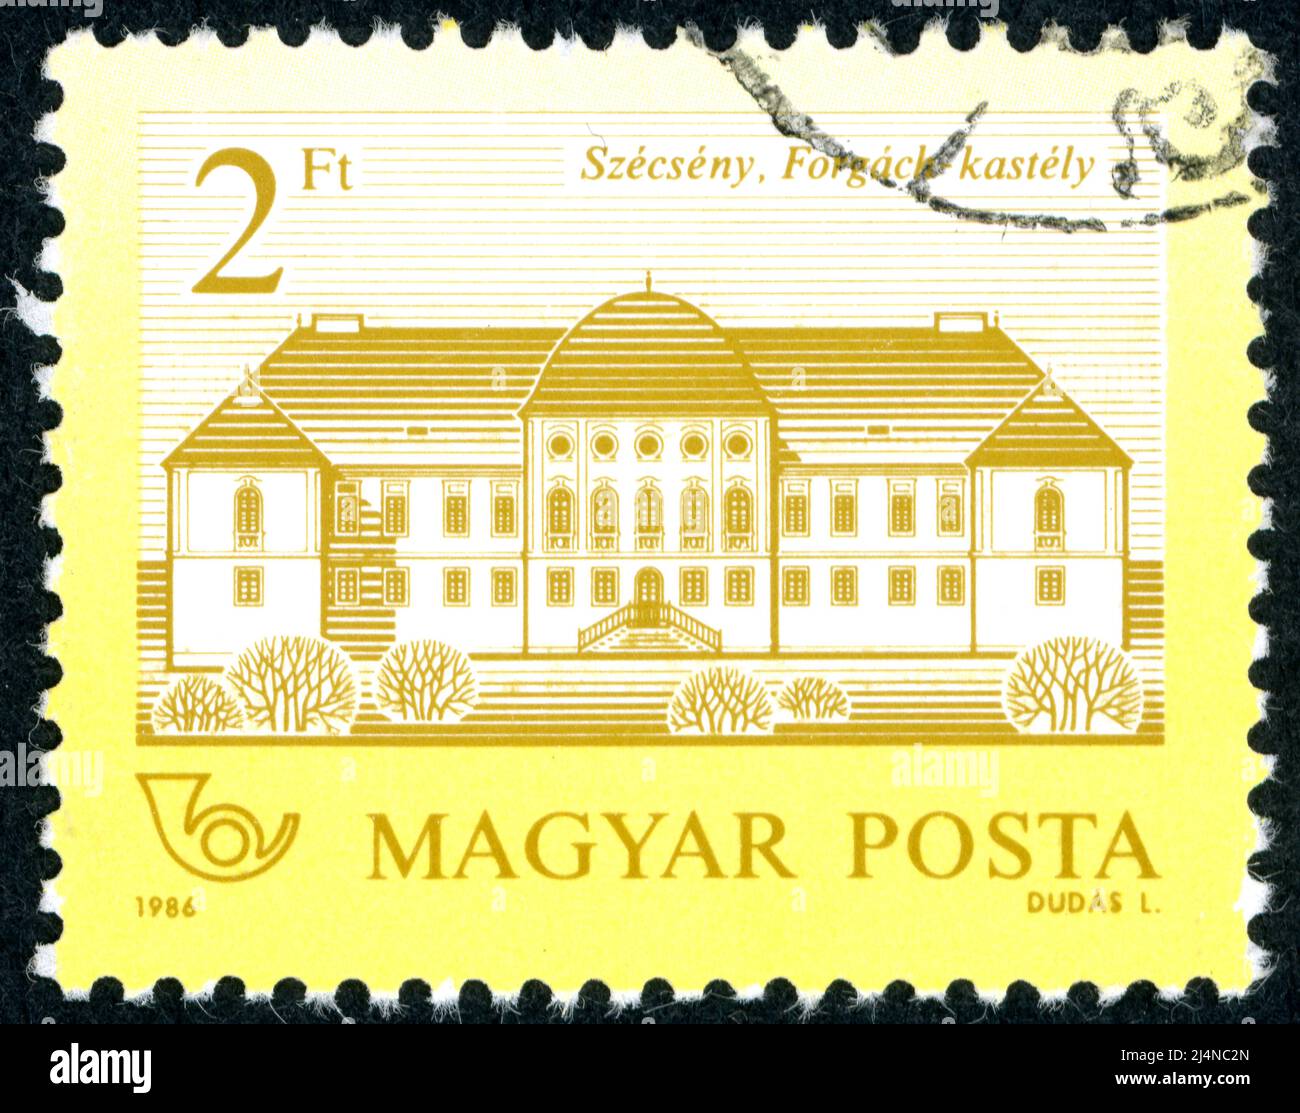 HONGRIE - VERS 1986 : timbre imprimé en Hongrie, représenté par le château de Forgach, Szecseny, vers 1986 Banque D'Images